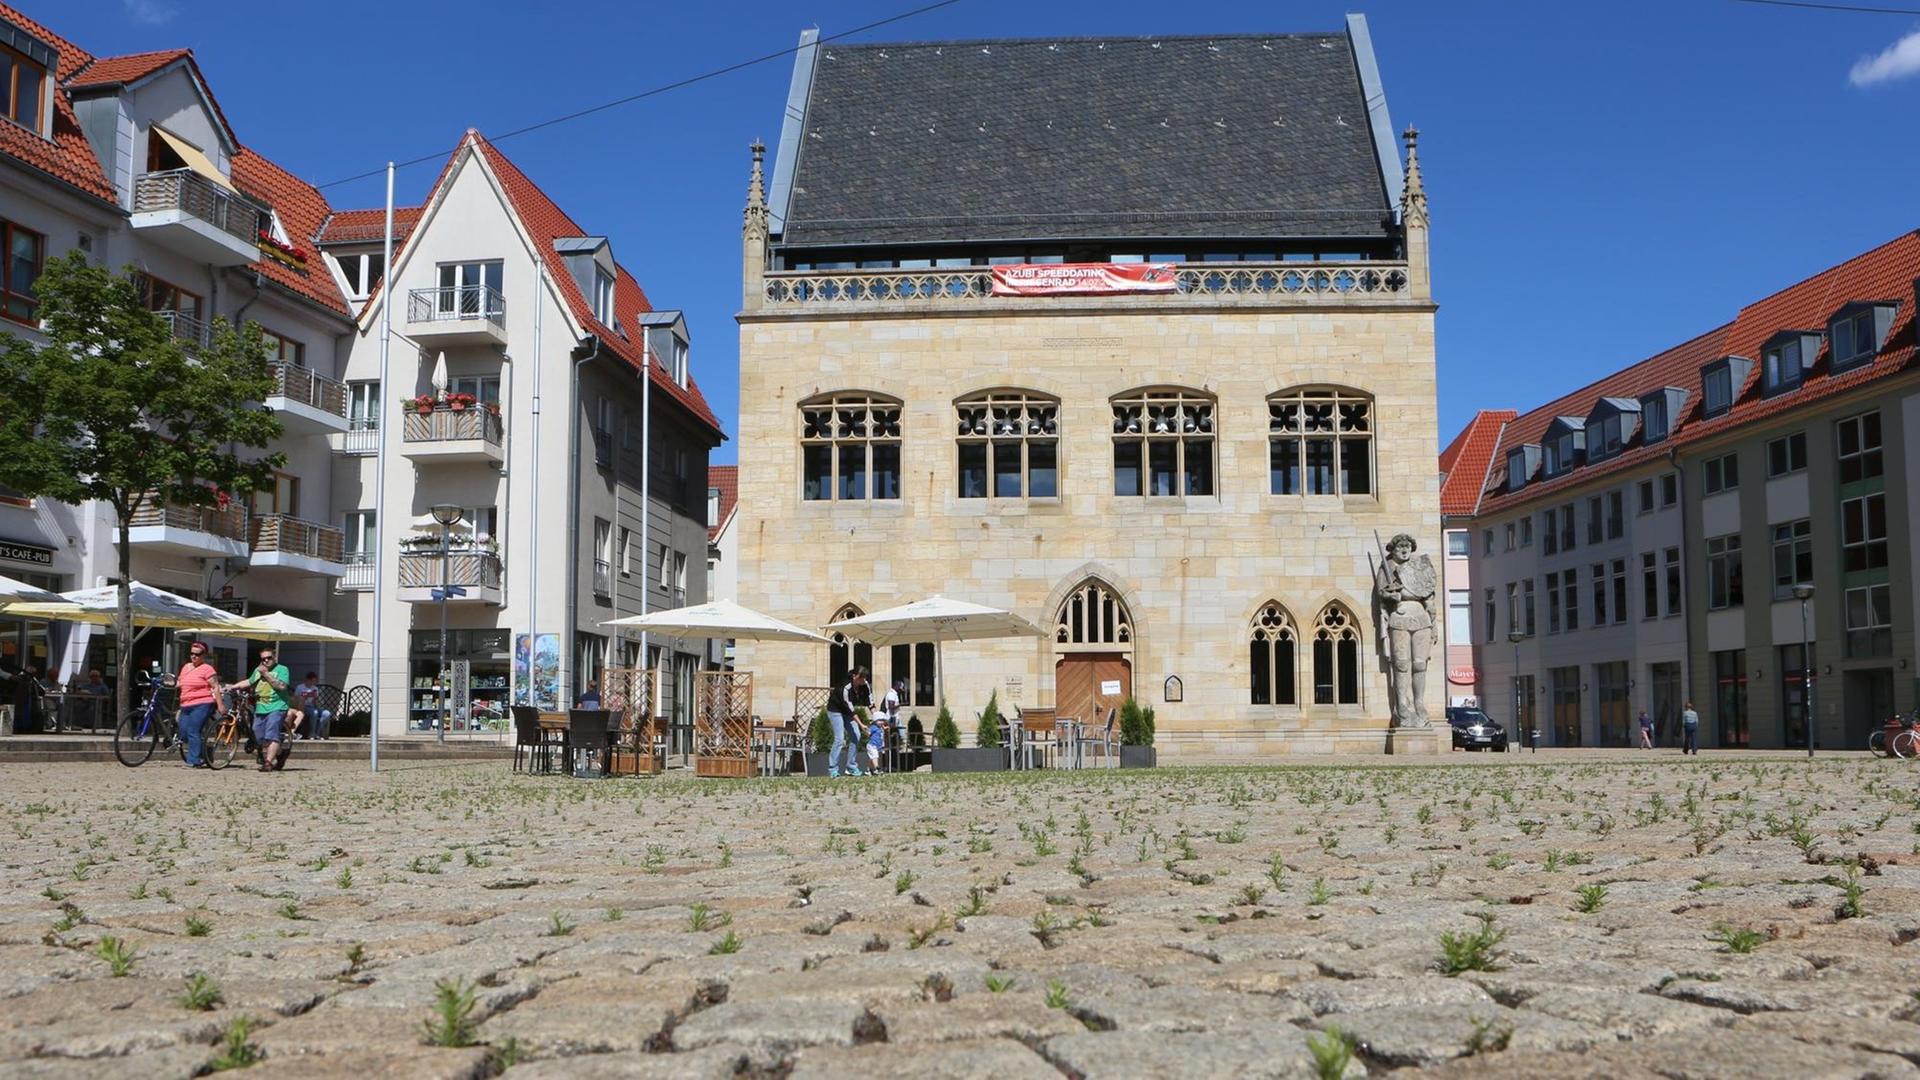 Kopfsteinpflaster auf dem Platz vor teils rekonstruierten, historischen Rathaus von Halberstadt. aufgenommen am 13. Juli 2020